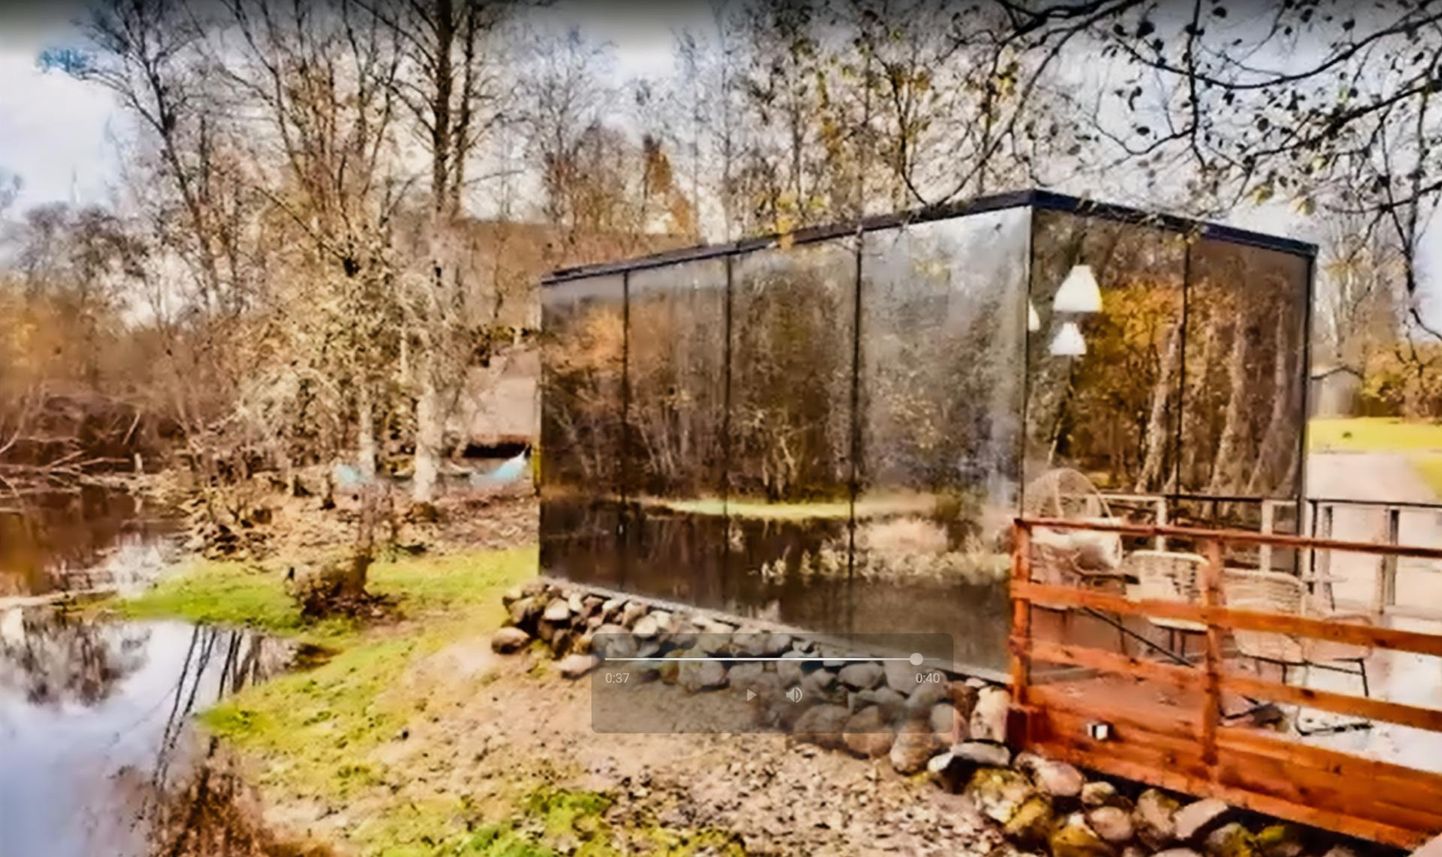 Peegelmaja reklaamvideos on näha, kui lähedal veepiirile maja oktoobris asus.